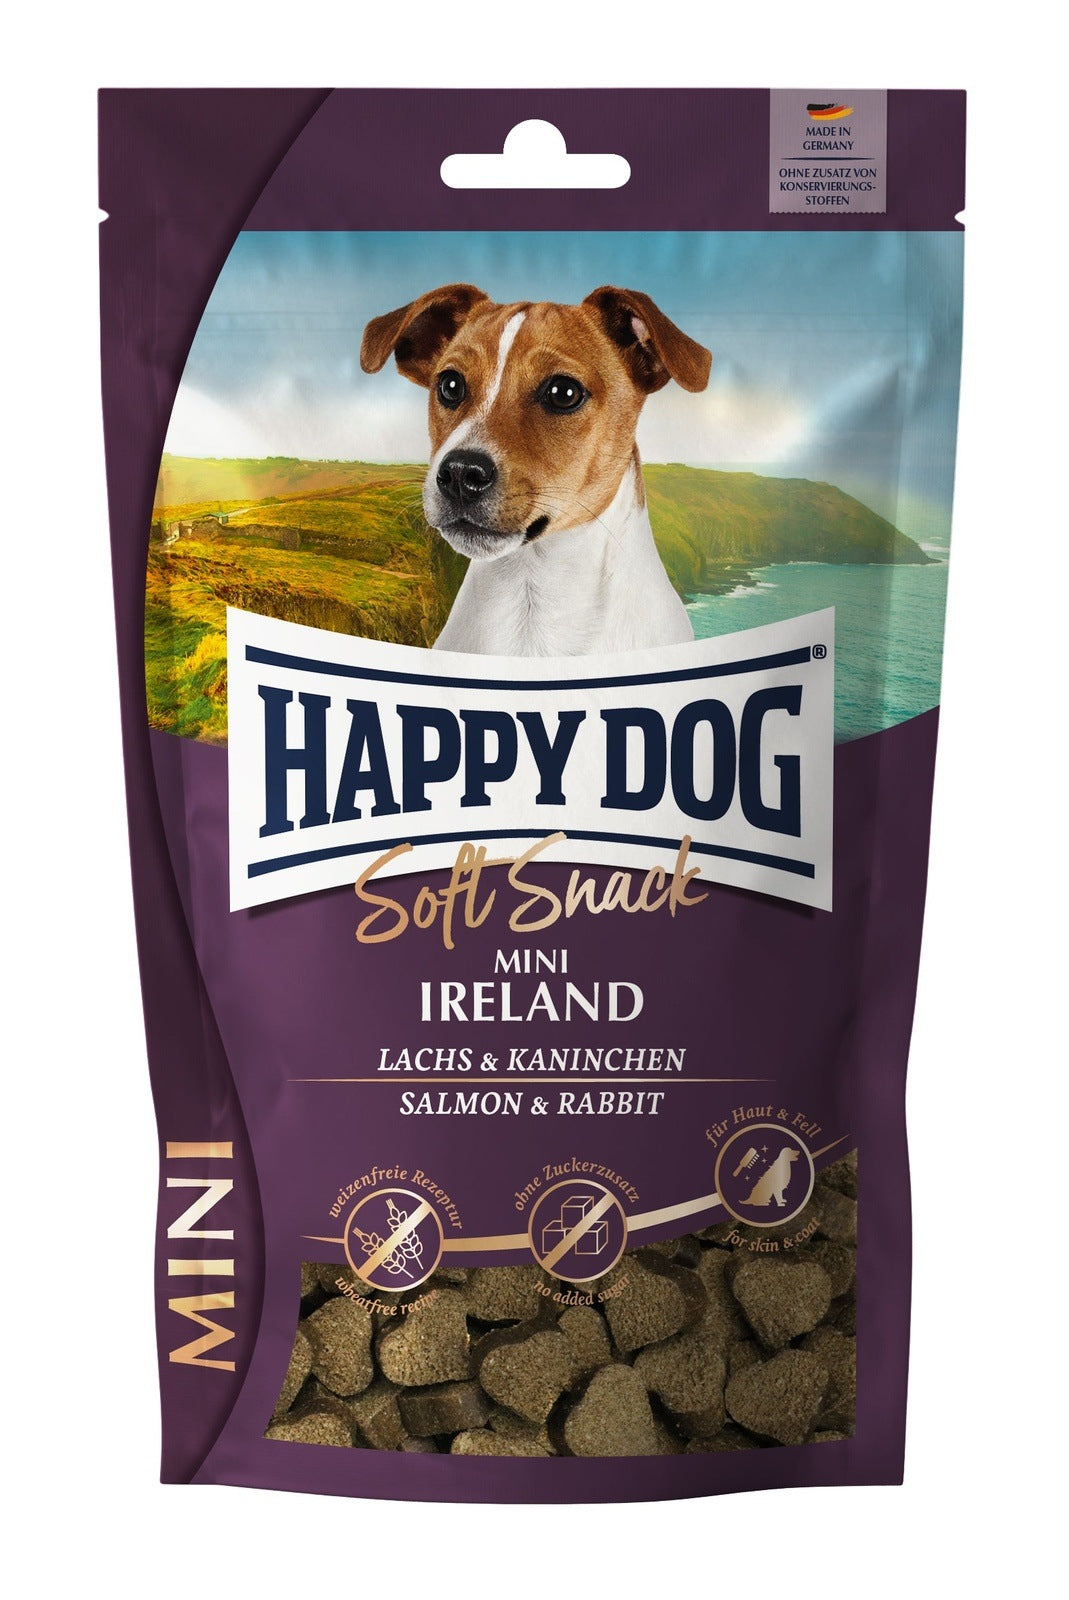 Artikel mit dem Namen Happy Dog SoftSnack Mini Ireland im Shop von zoo.de , dem Onlineshop für nachhaltiges Hundefutter und Katzenfutter.